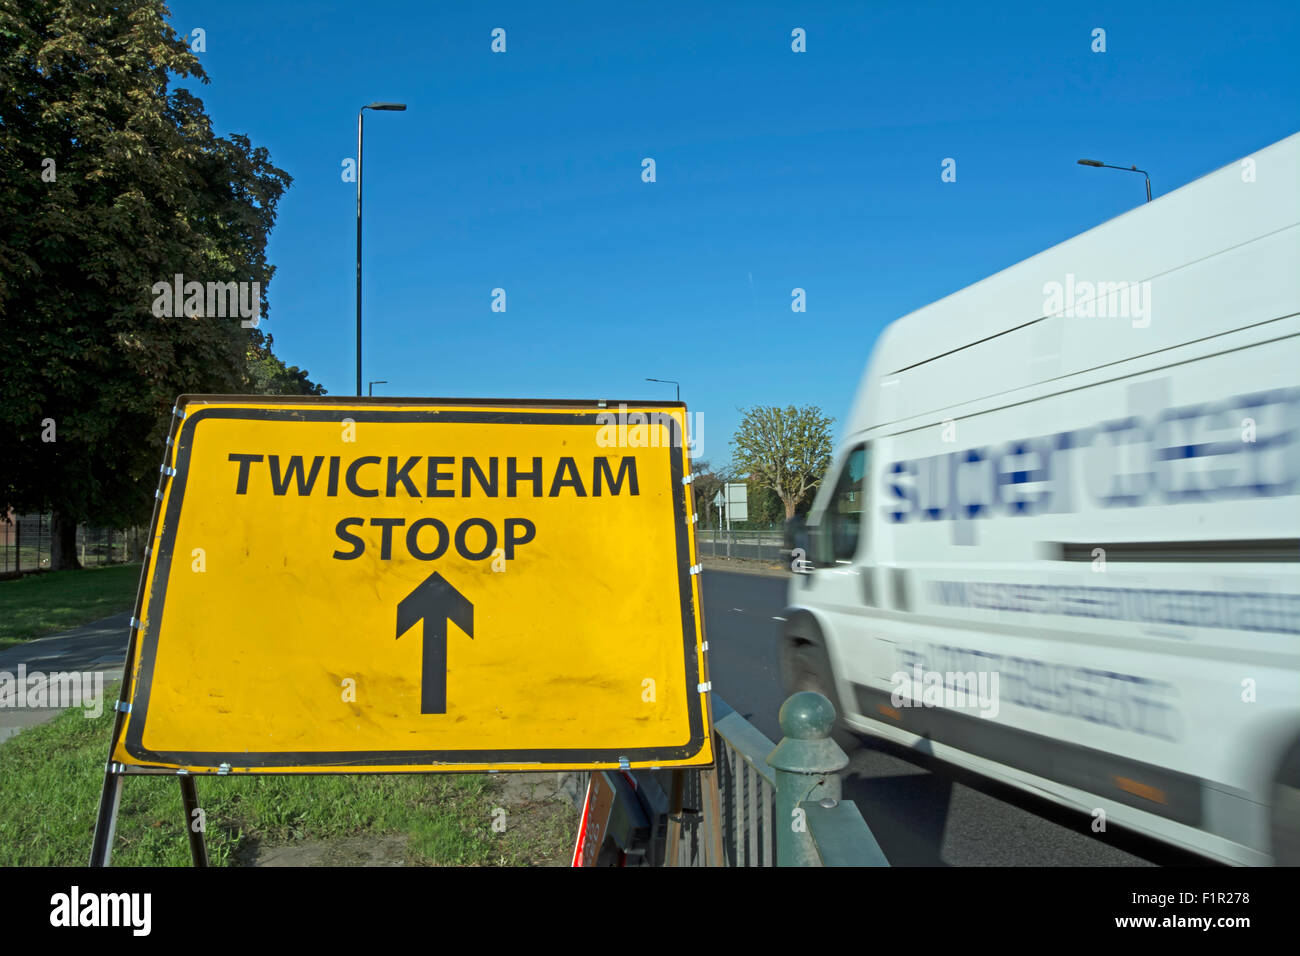 Melden Sie für das Twickenham Stoop, mit vorbeifahrenden Kleinbus in Bewegungsunschärfe A316, Twickenham, Middlesex, england Stockfoto